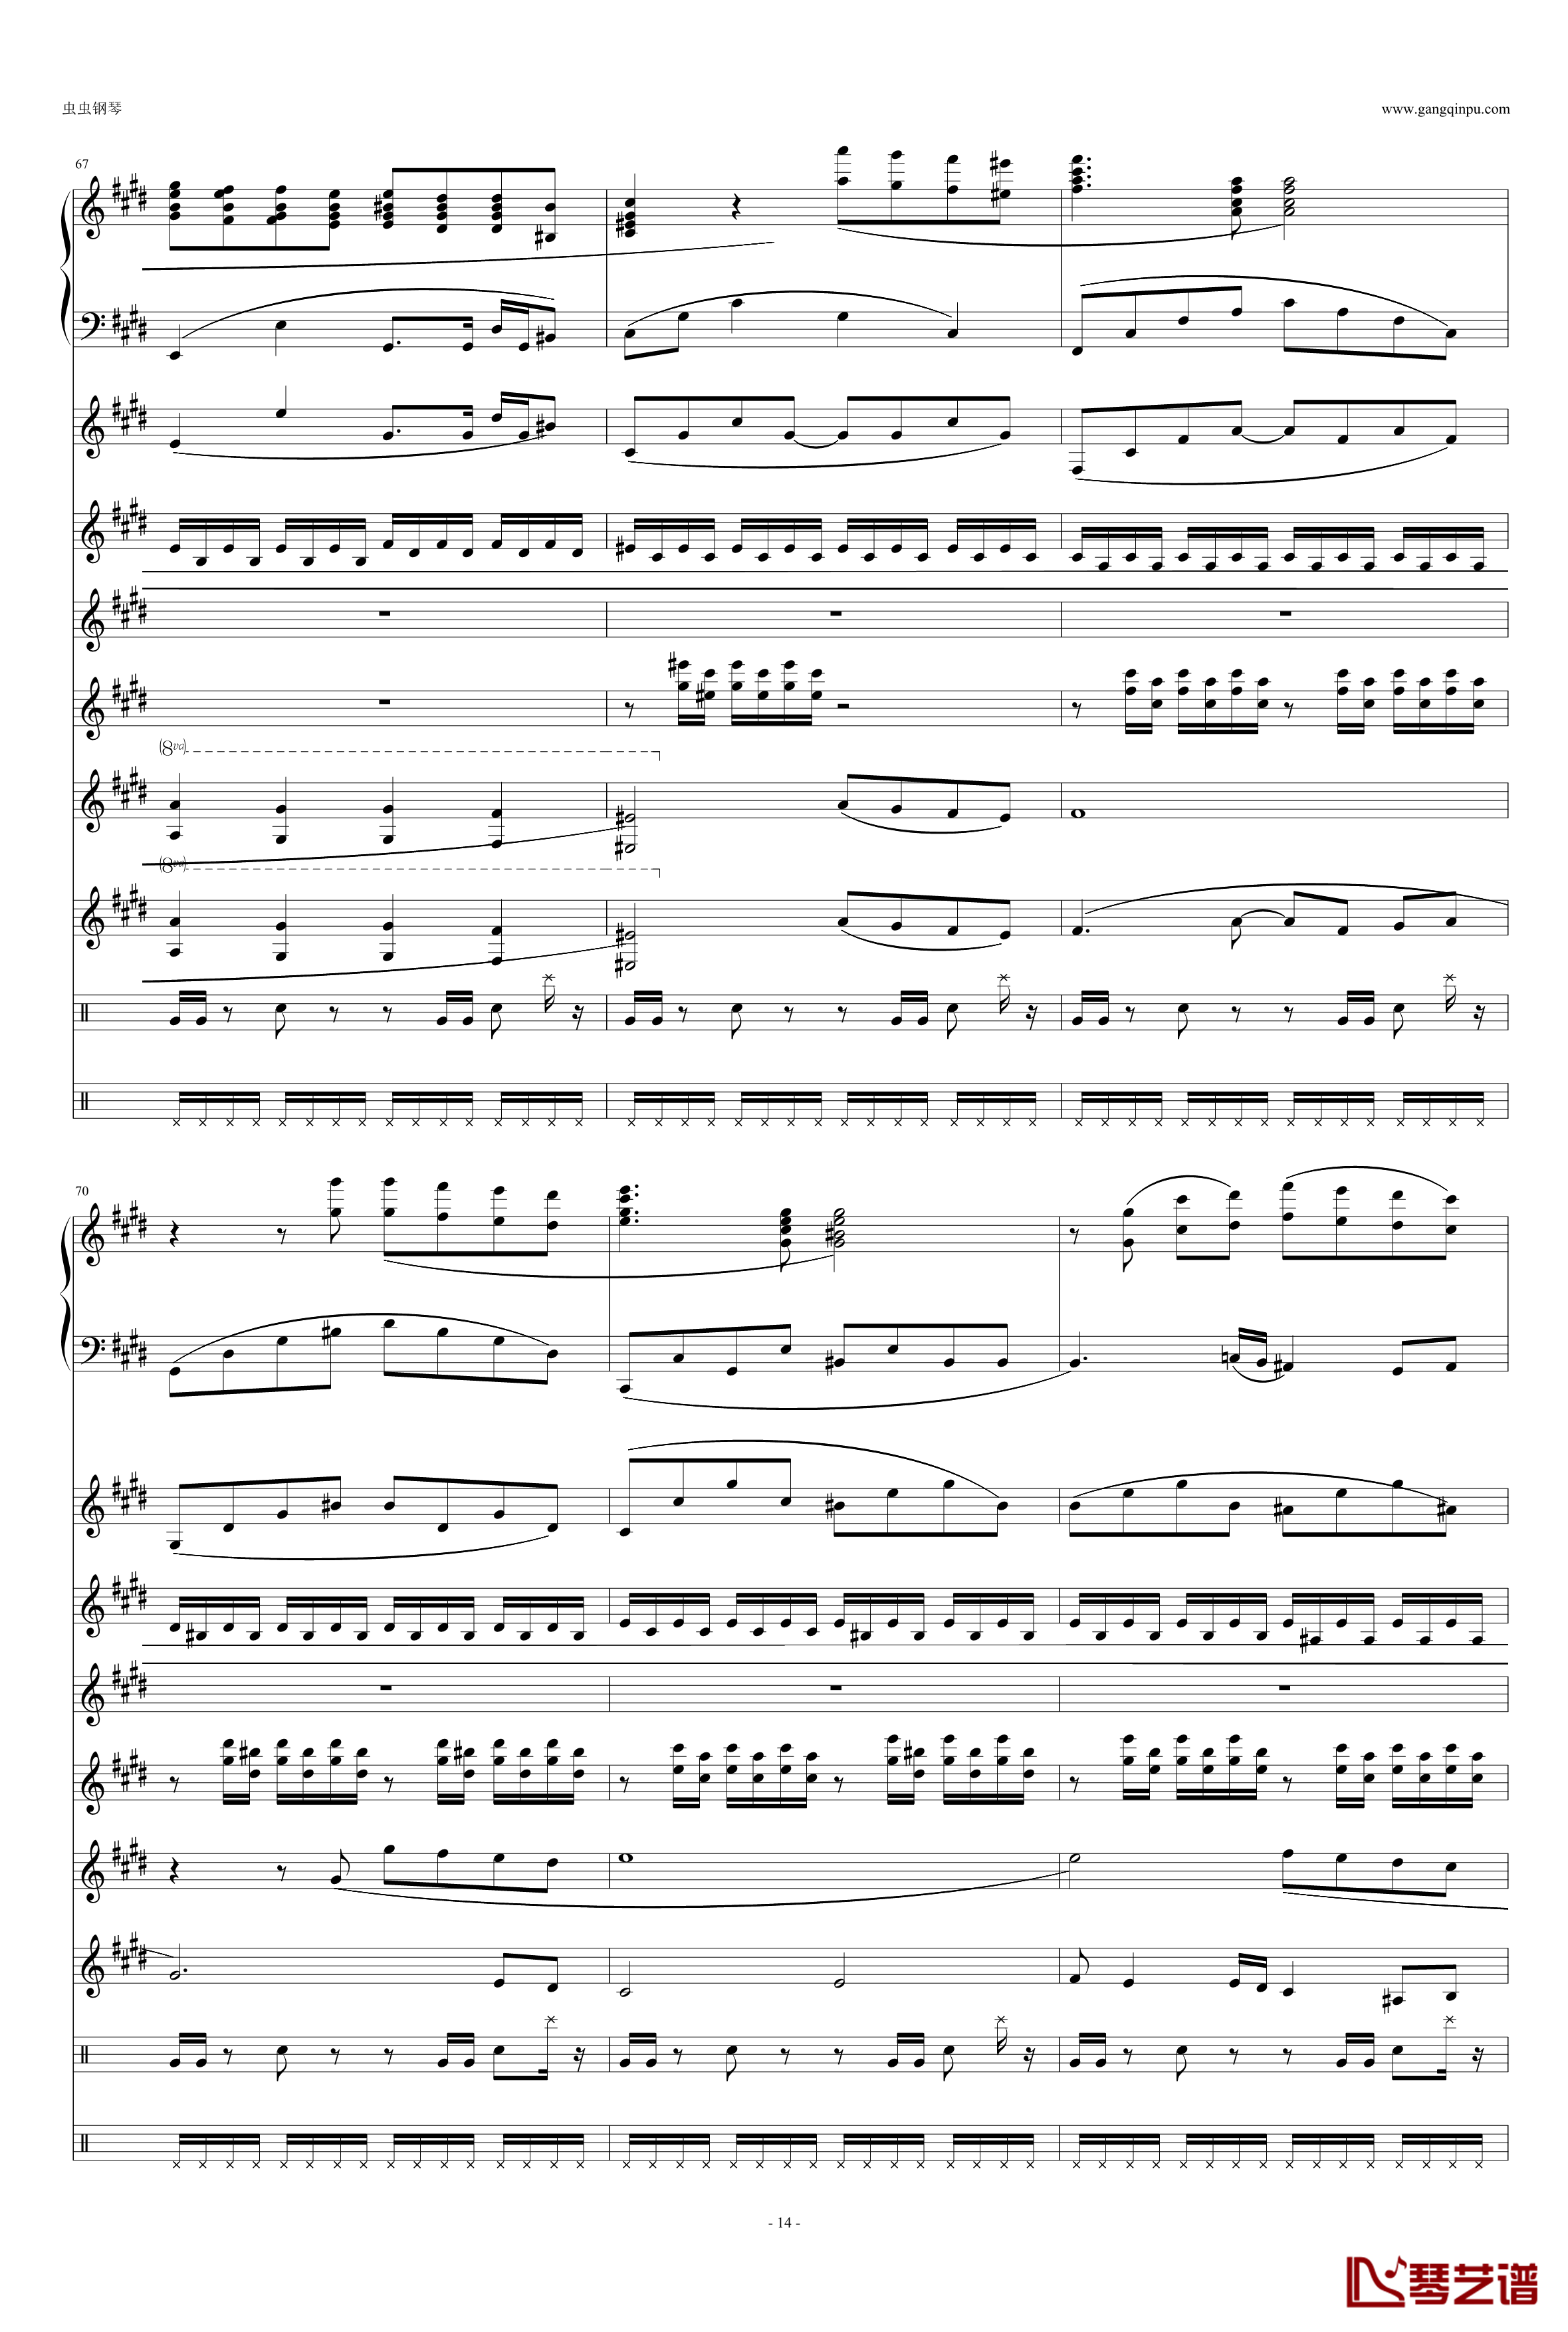 利鲁之歌钢琴谱-leeloos theme-马克西姆-Maksim·Mrvica14